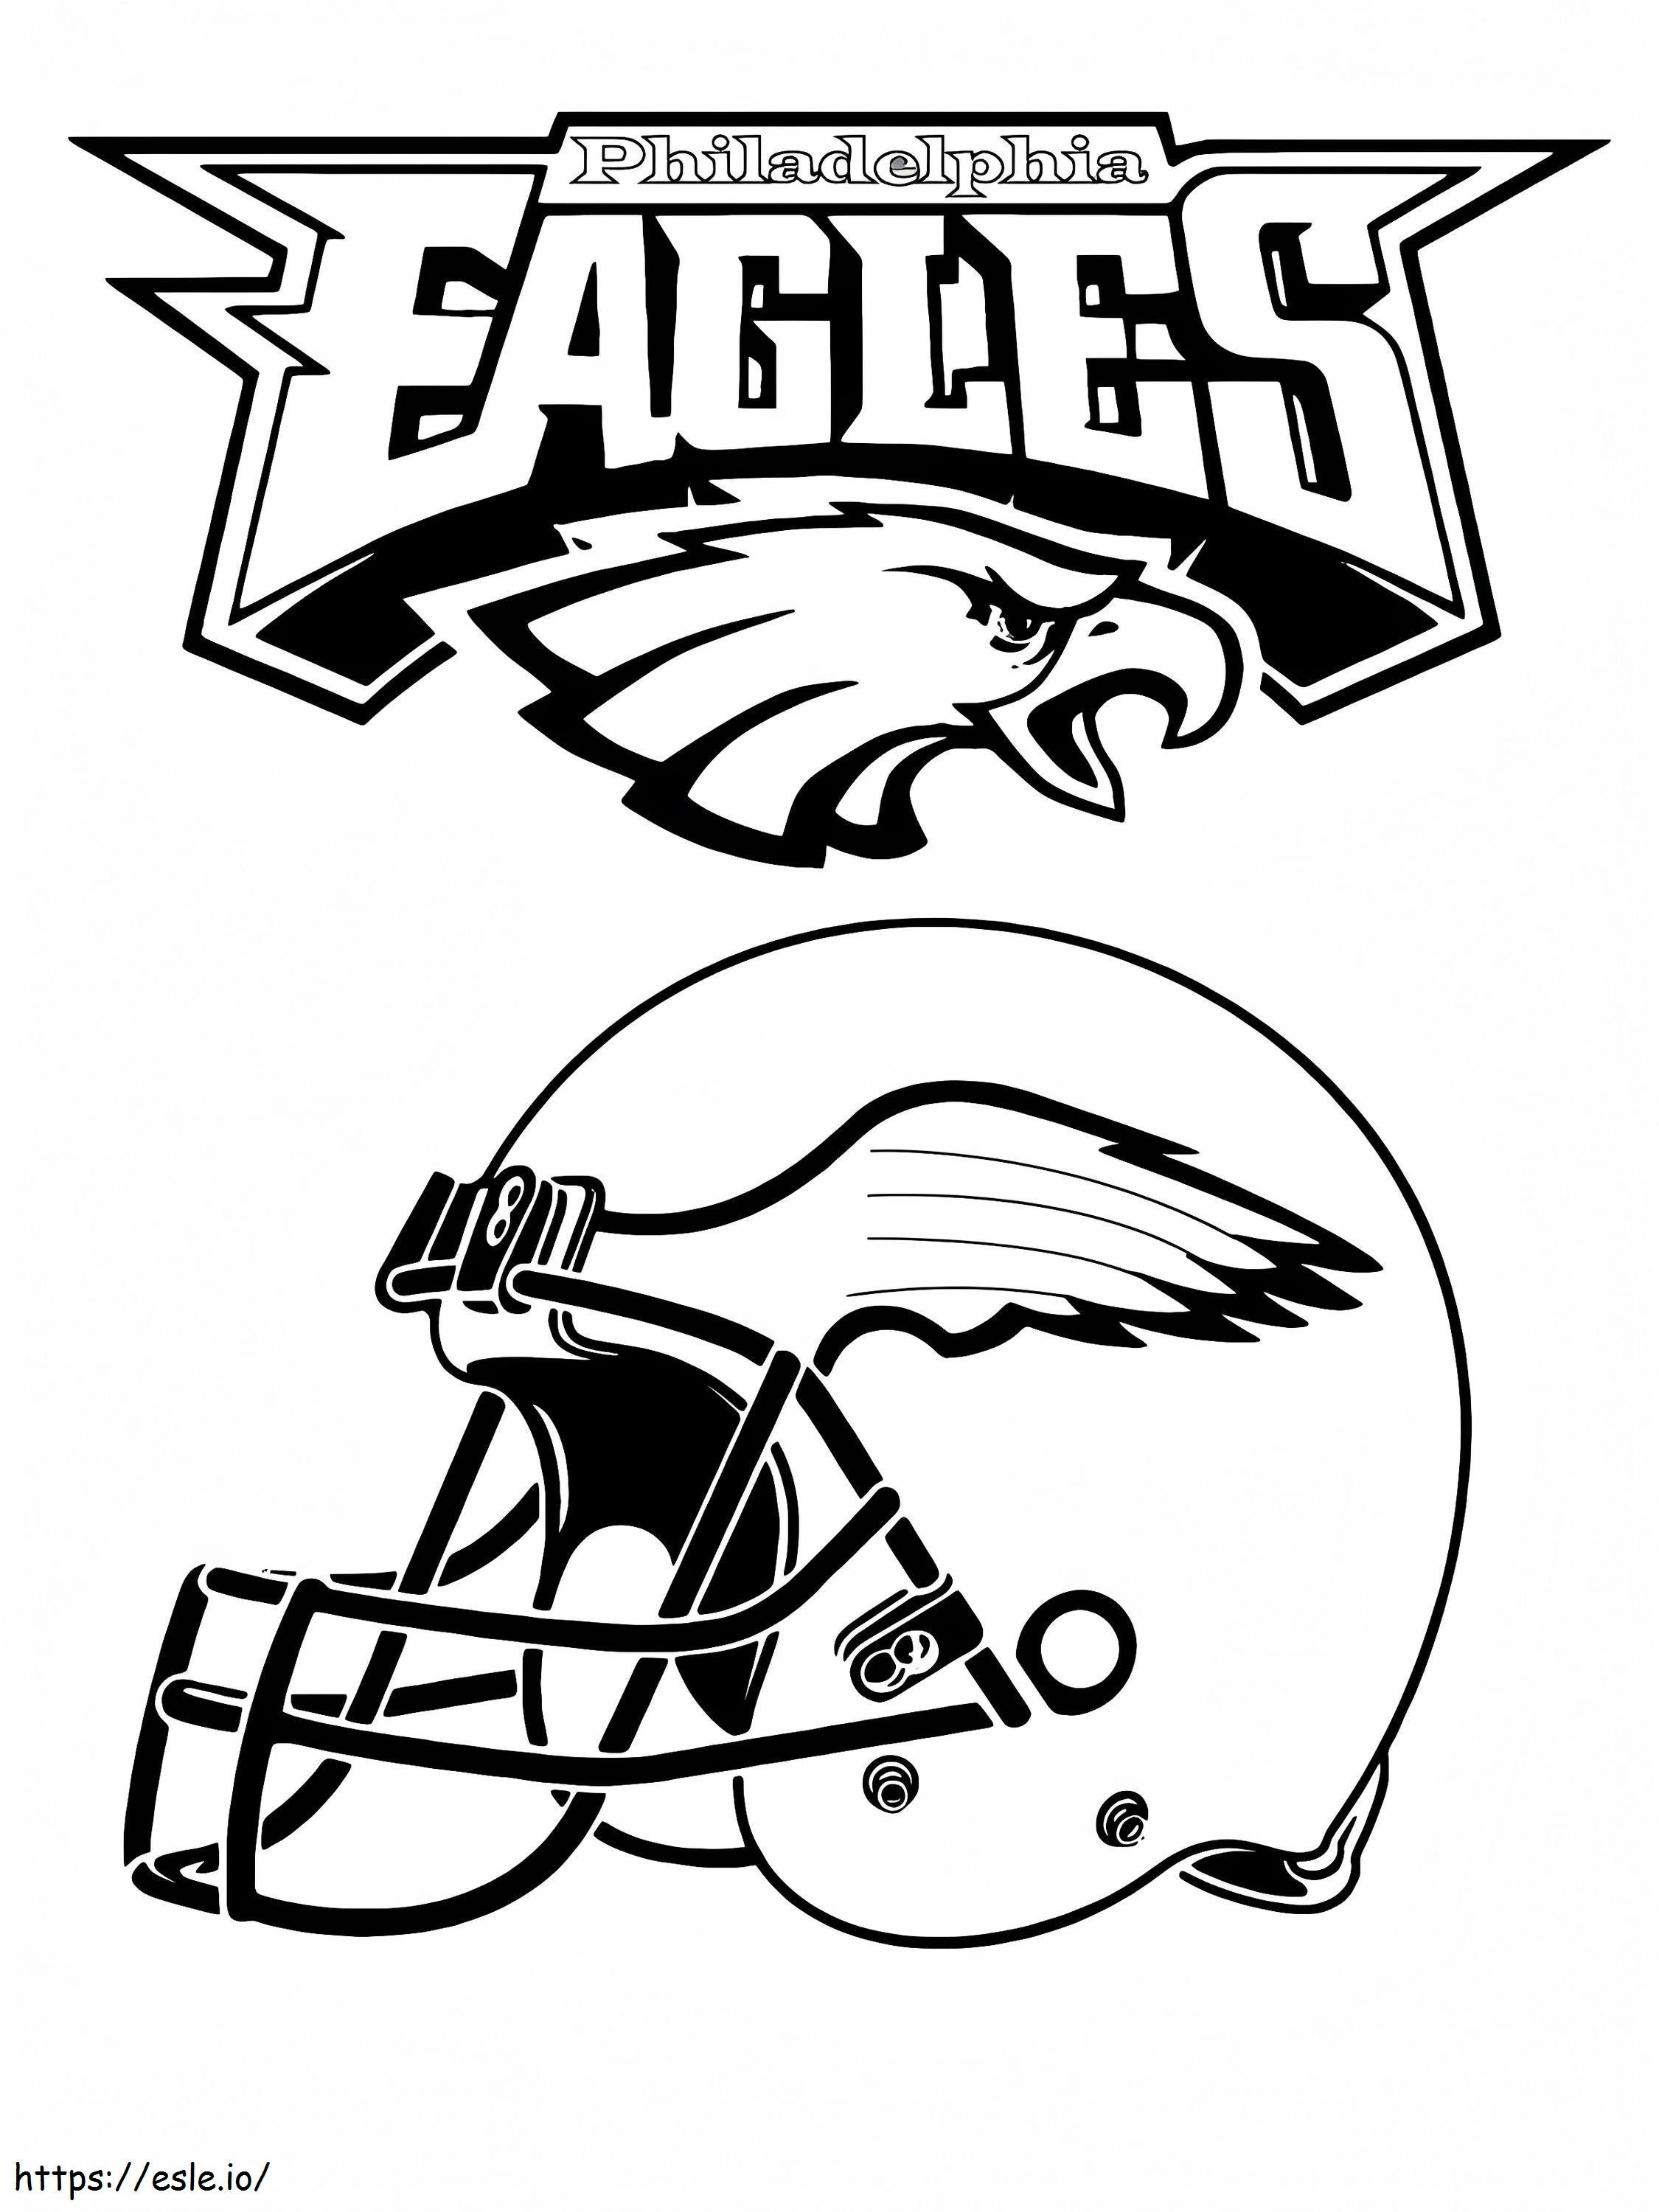 Philadelphia Eagles sisak kifestő